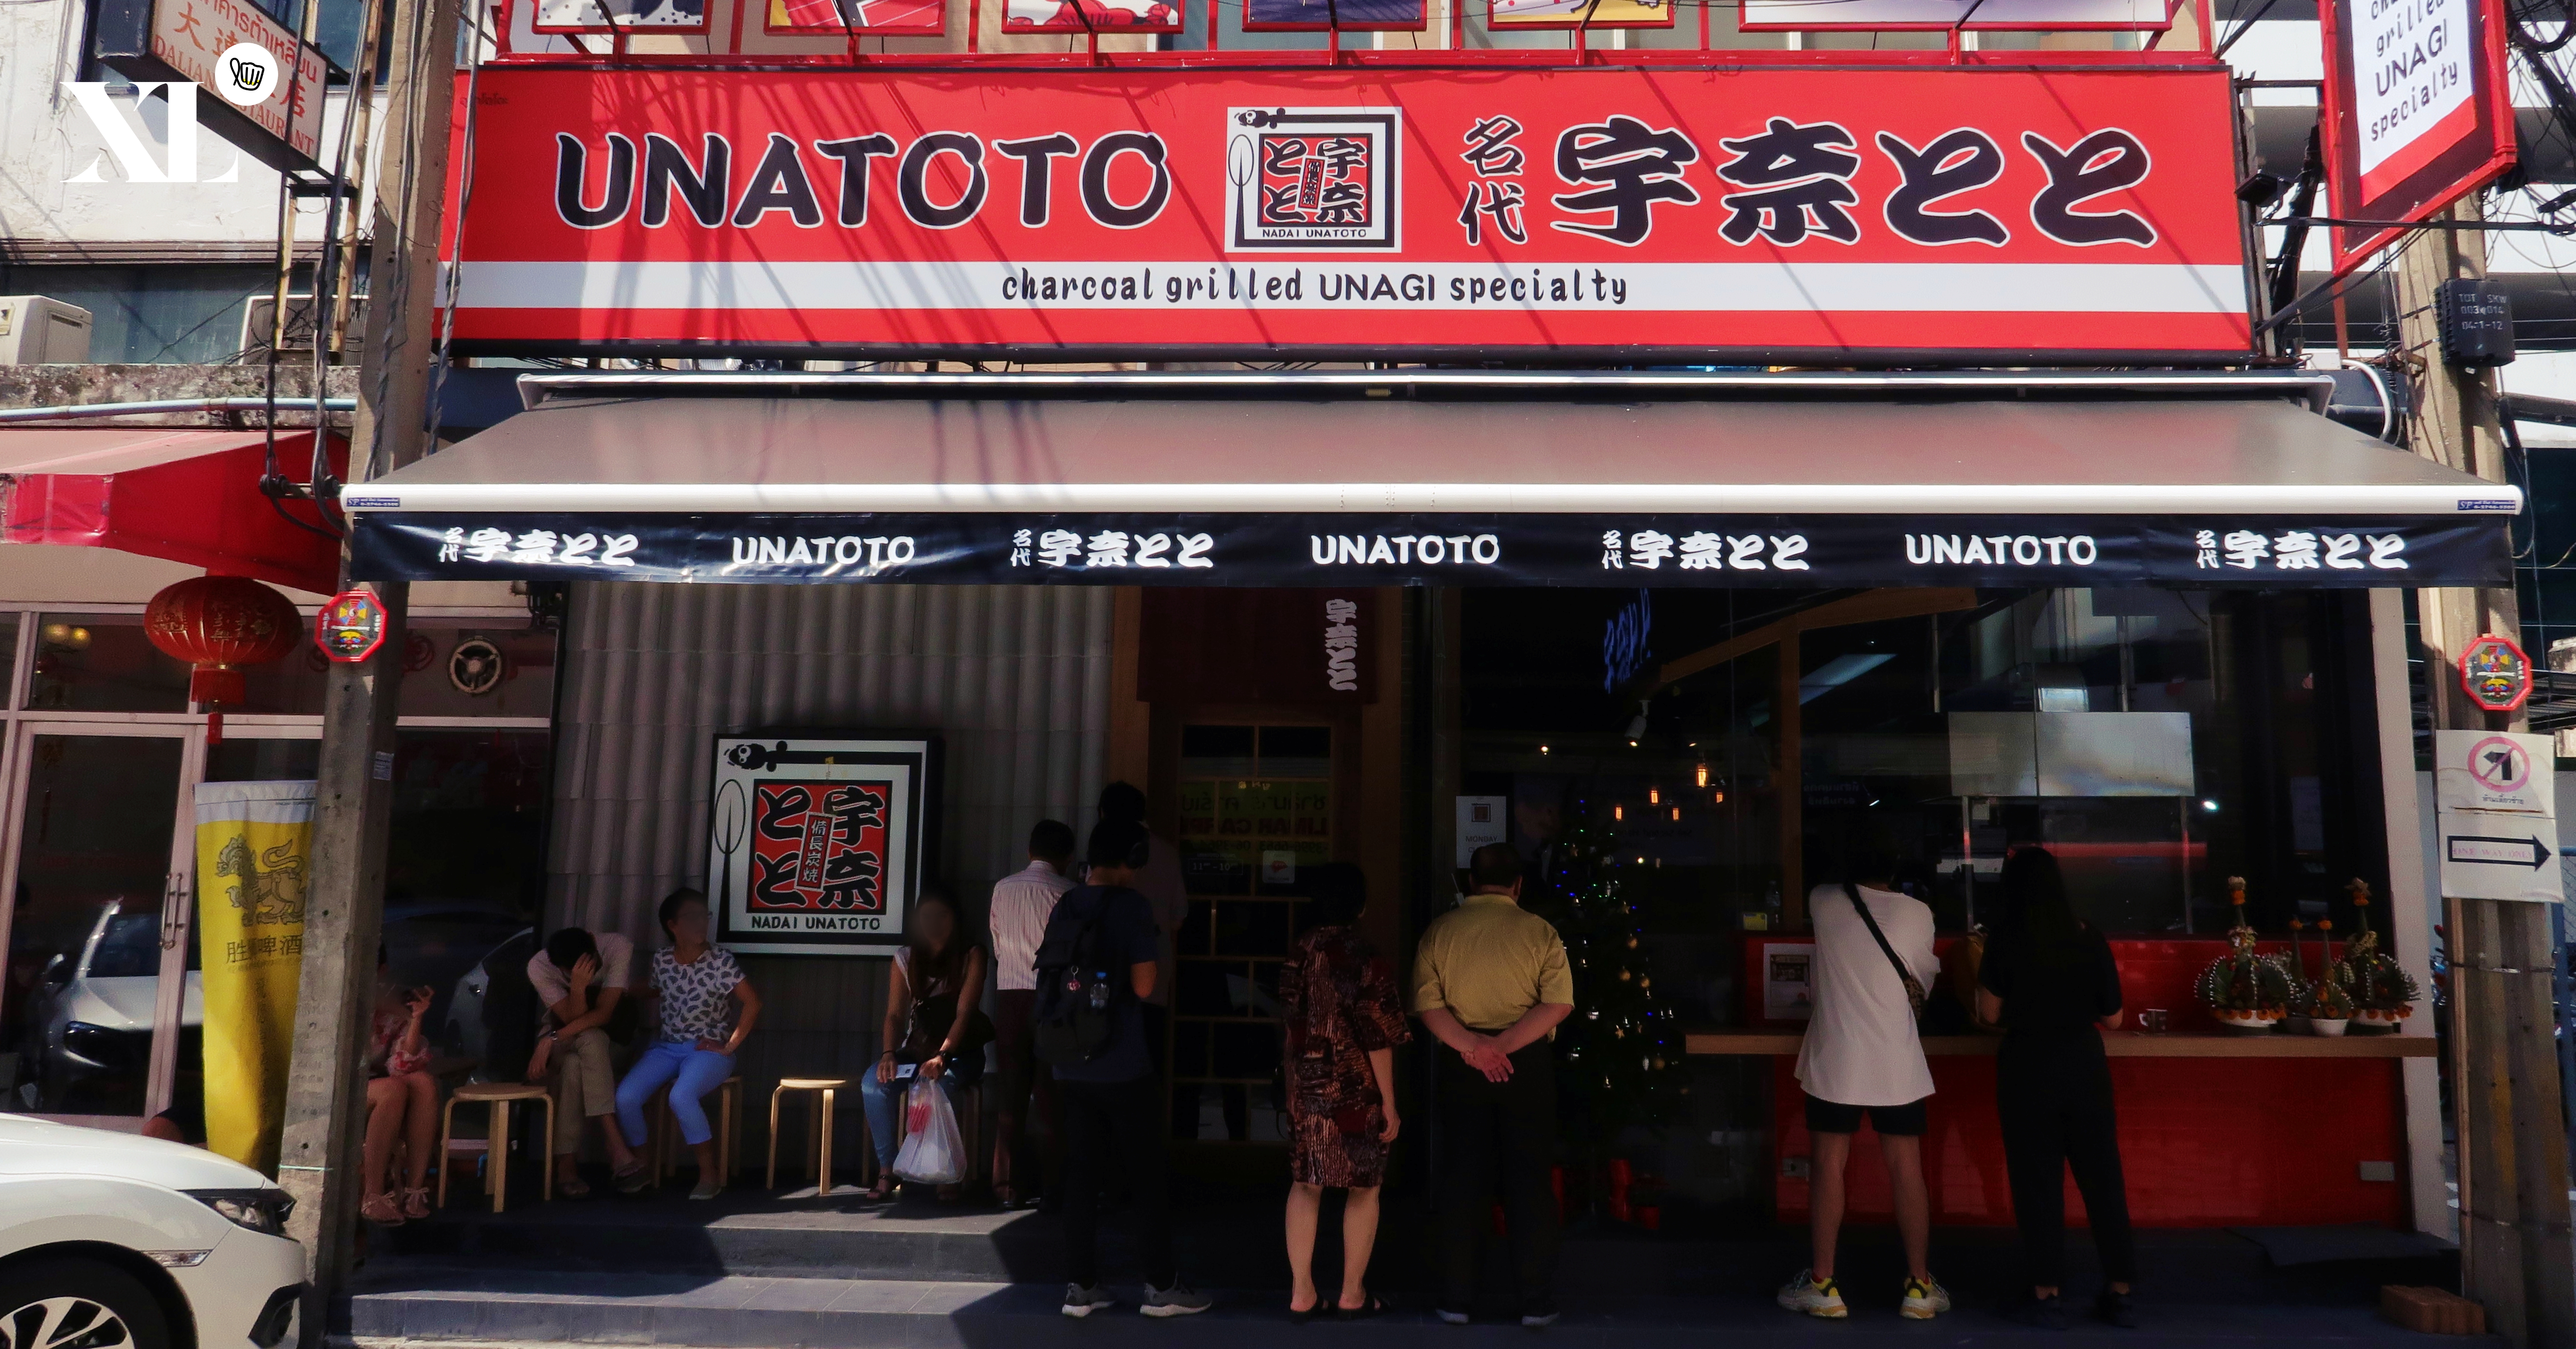 'Unatoto' ร้านอาหารญี่ปุ่นที่เชี่ยวชาญ 'ข้าวหน้าปลาไหล' เป็นพิเศษ!